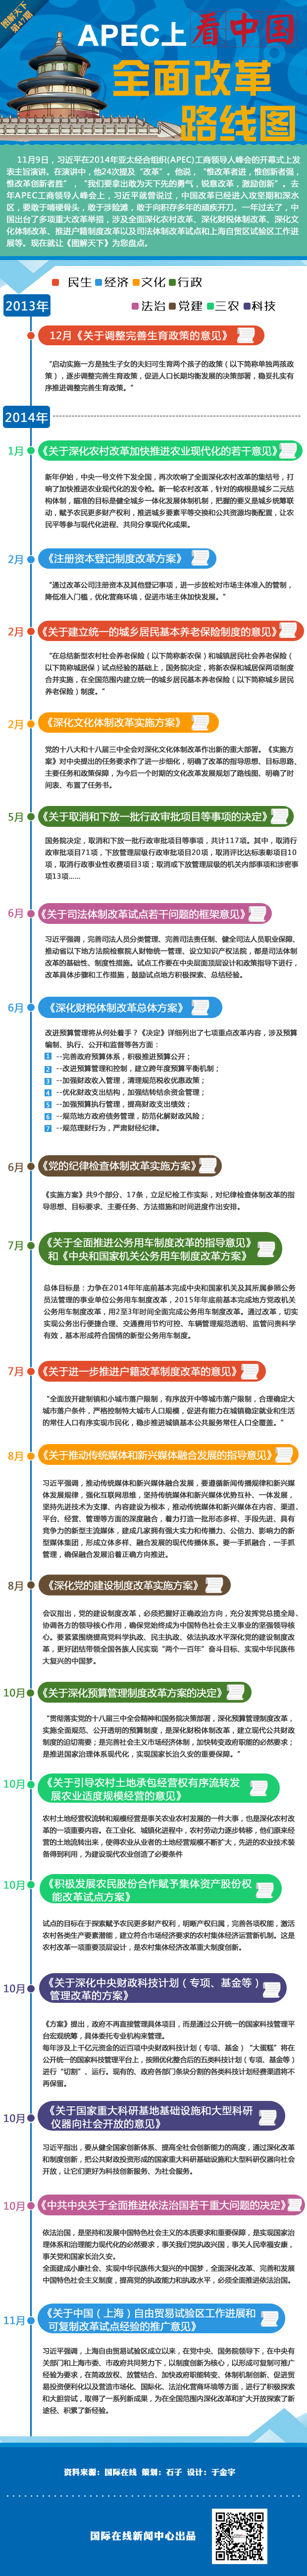 APEC上看中國:全面改革路線圖